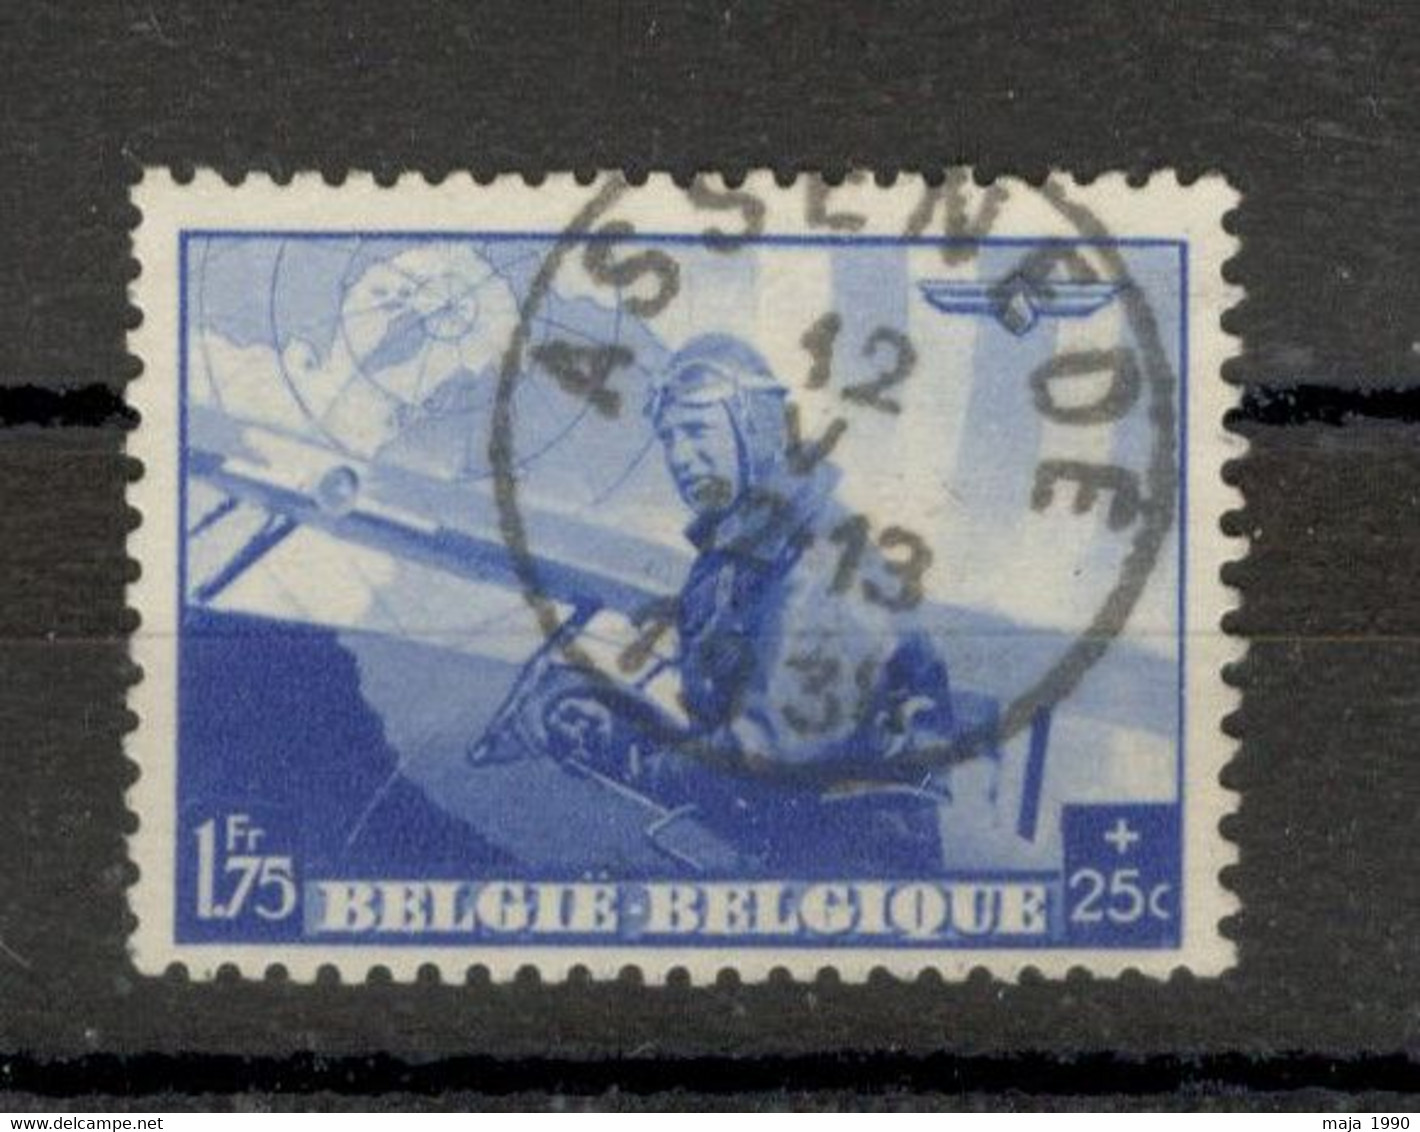 BELGIUM USED AIRMAIL STAMP - Mi.No. 469 - 1938. - 1929-1941 Gran Montenez